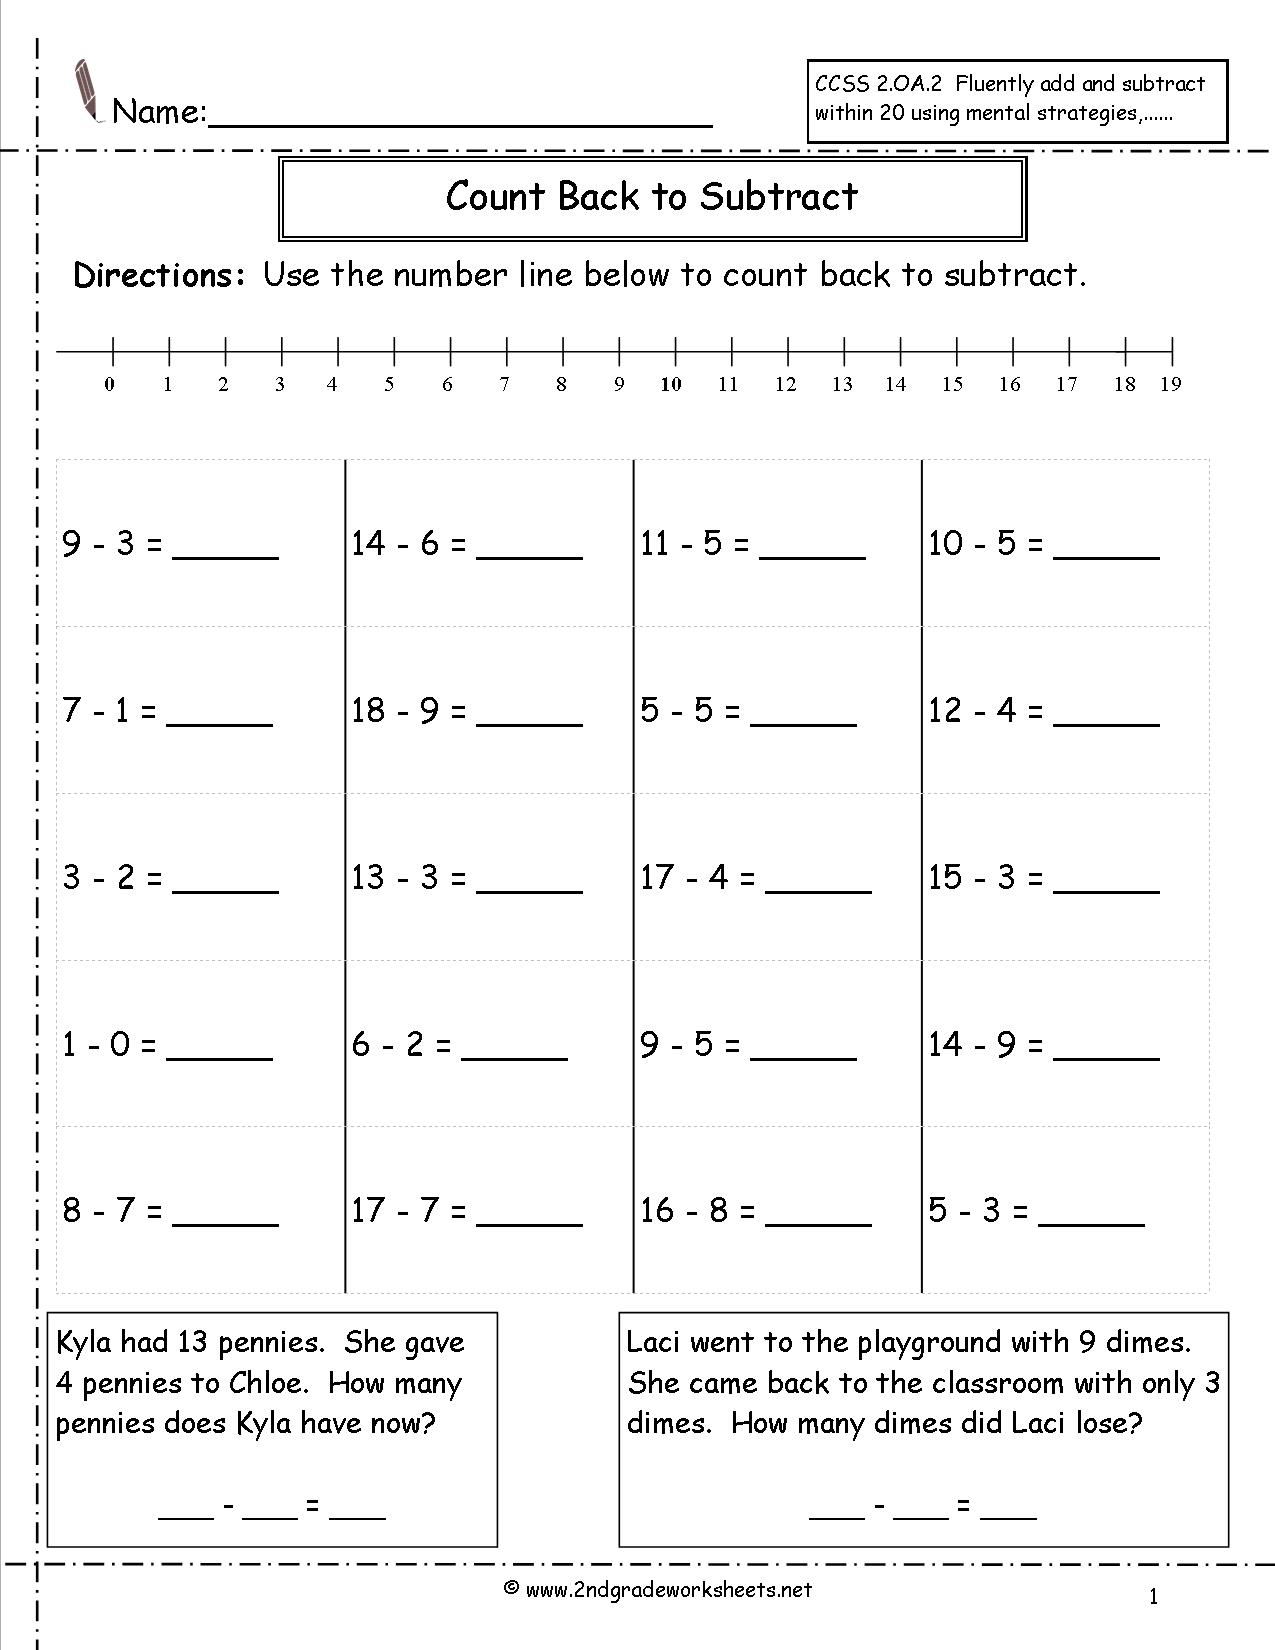 Number Line Subtraction Worksheet Grade 2